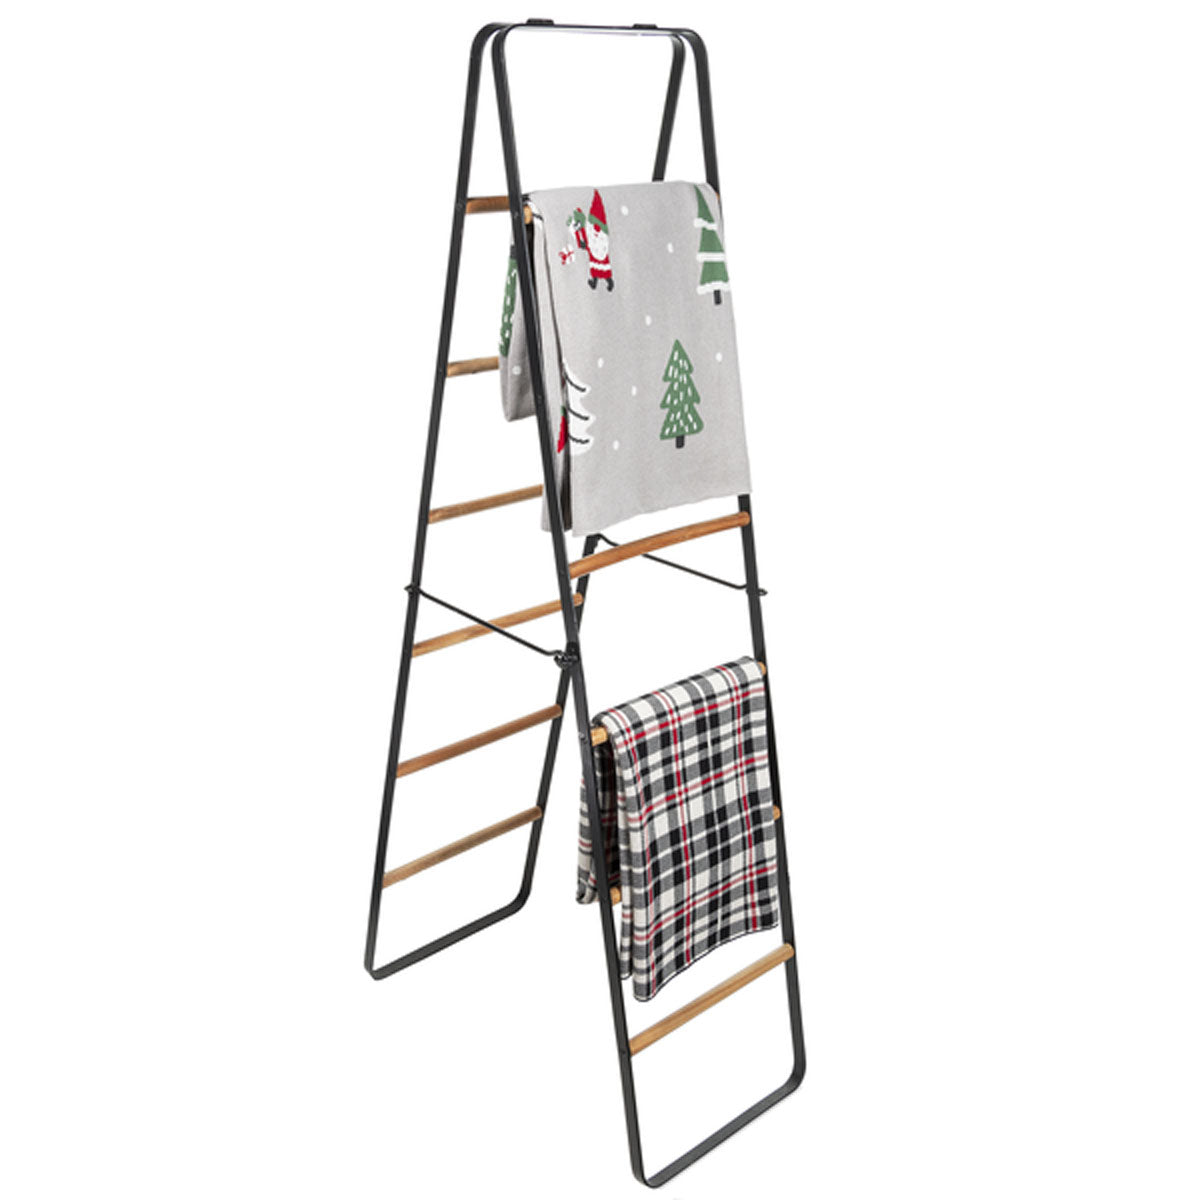 Double Sided Ladder Blanket Rack